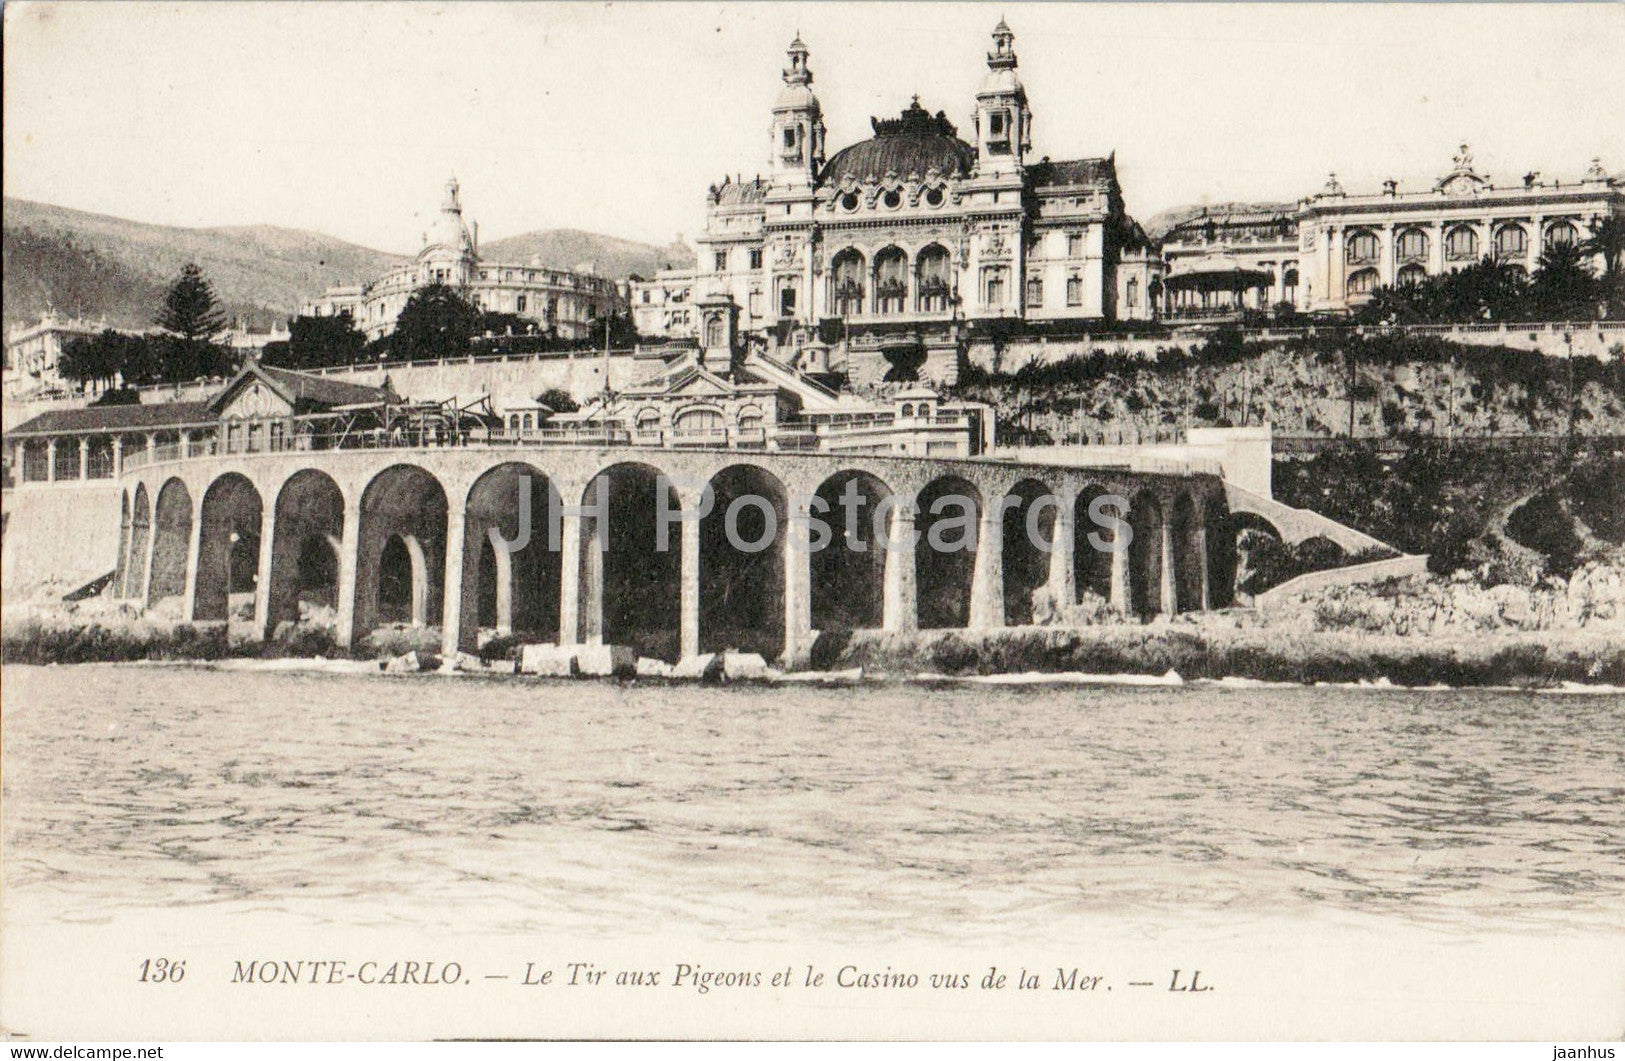 Monte Carlo - Le Tir aux Pigeons et le Casino vus de la Mer - 136 - old postcard - Monaco - unused - JH Postcards